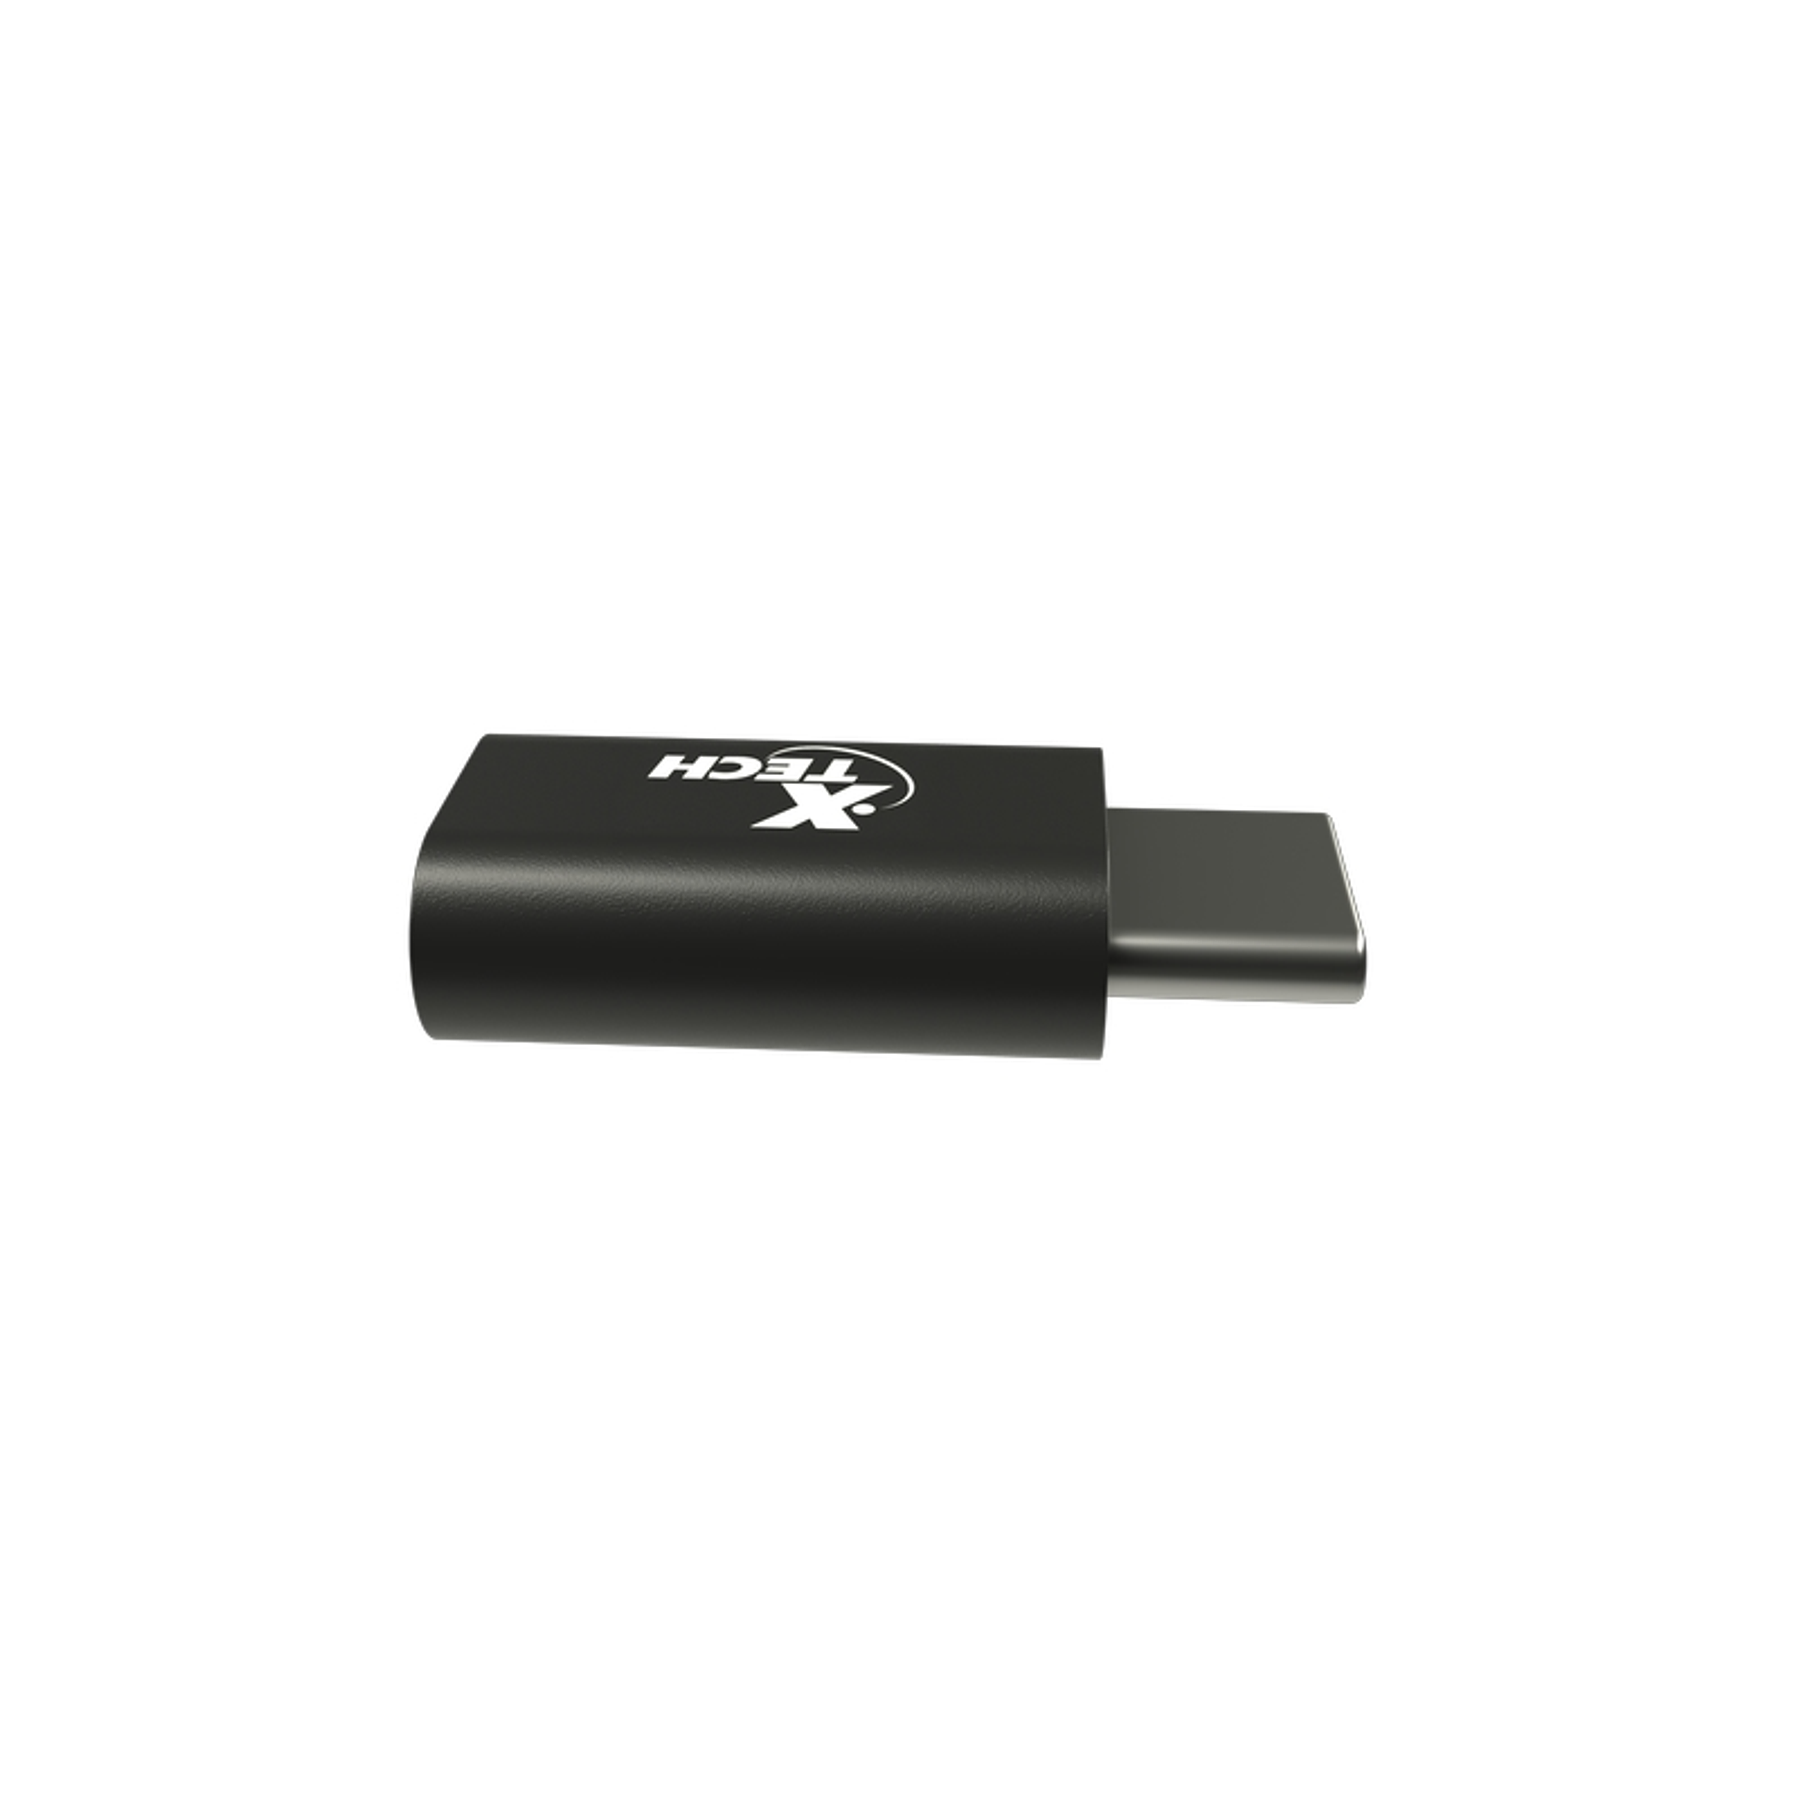 Xtech Adaptador Tipo C a Micro-USB Conecta tus dispositivos de forma sencilla